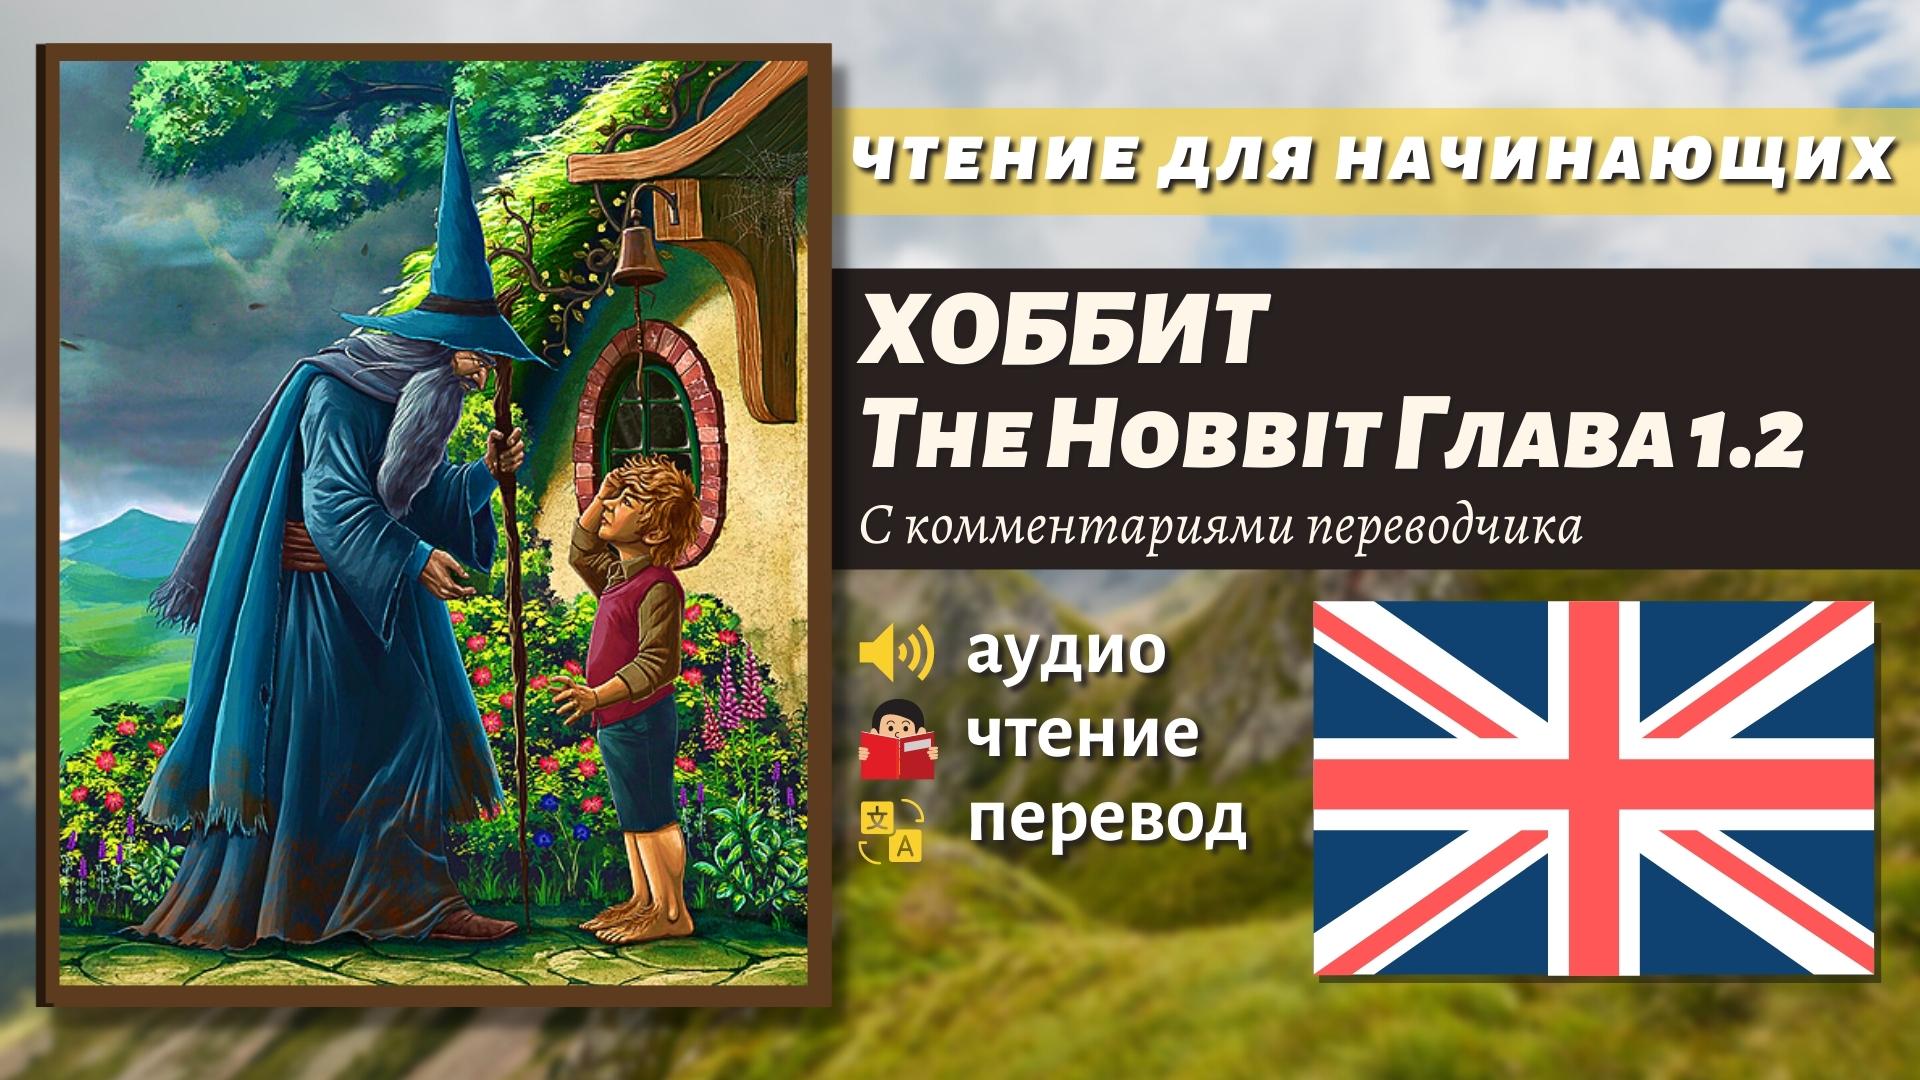 ЧТЕНИЕ НА АНГЛИЙСКОМ - The Hobbit J. R. R. Tolkien глава 1.2